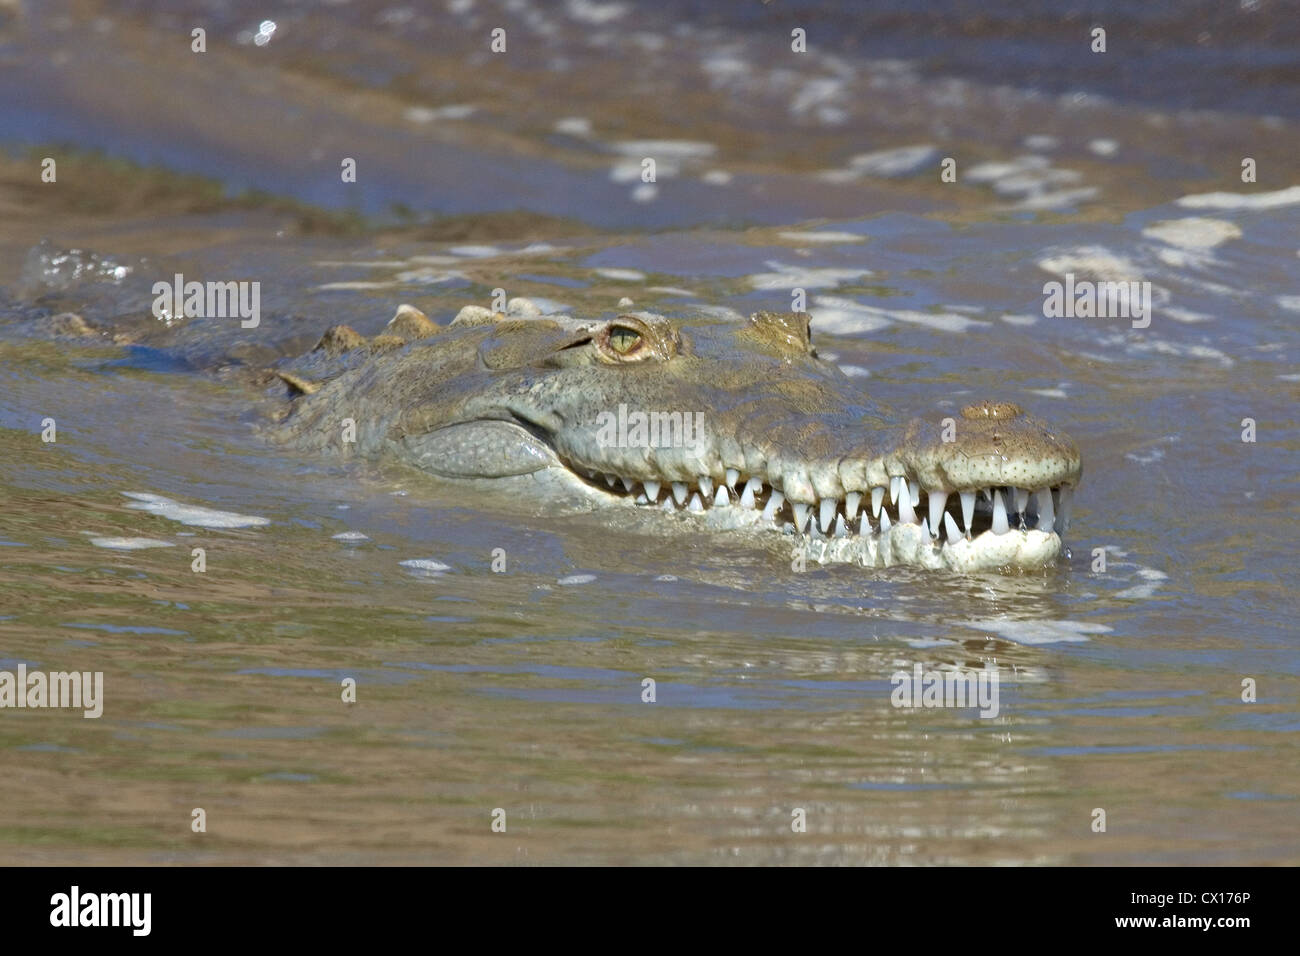 Crocodile swims along the Guacalillos Estuary, Costa Rica. Stock Photo